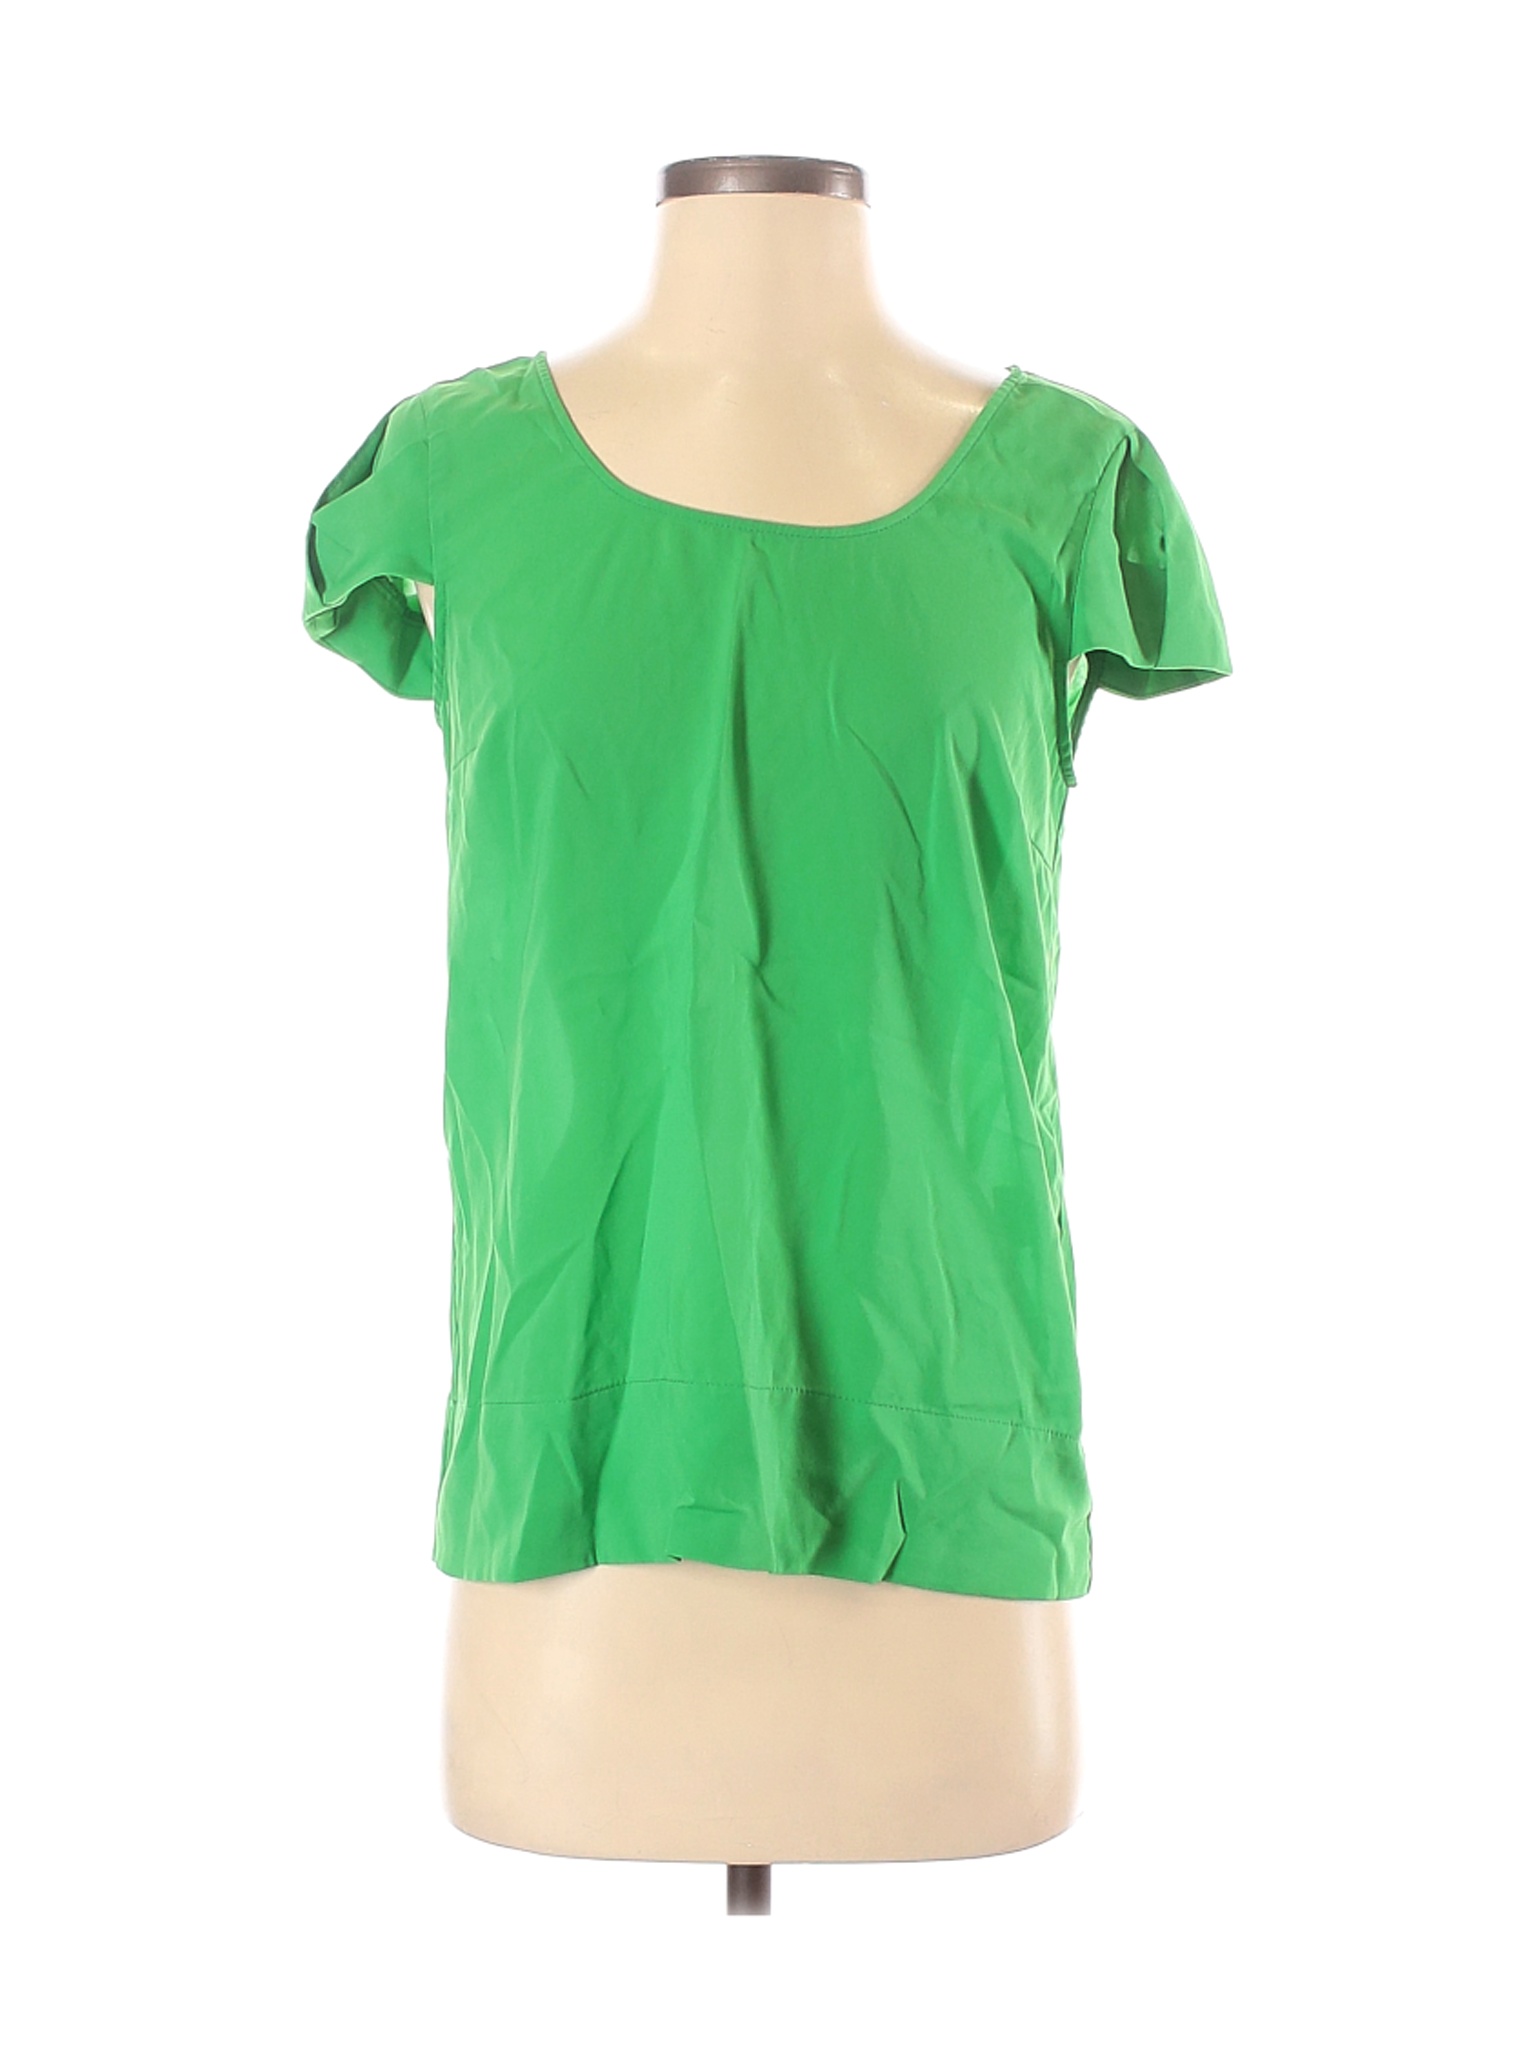 Zara Basic Women Green Short Sleeve Blouse S | eBay